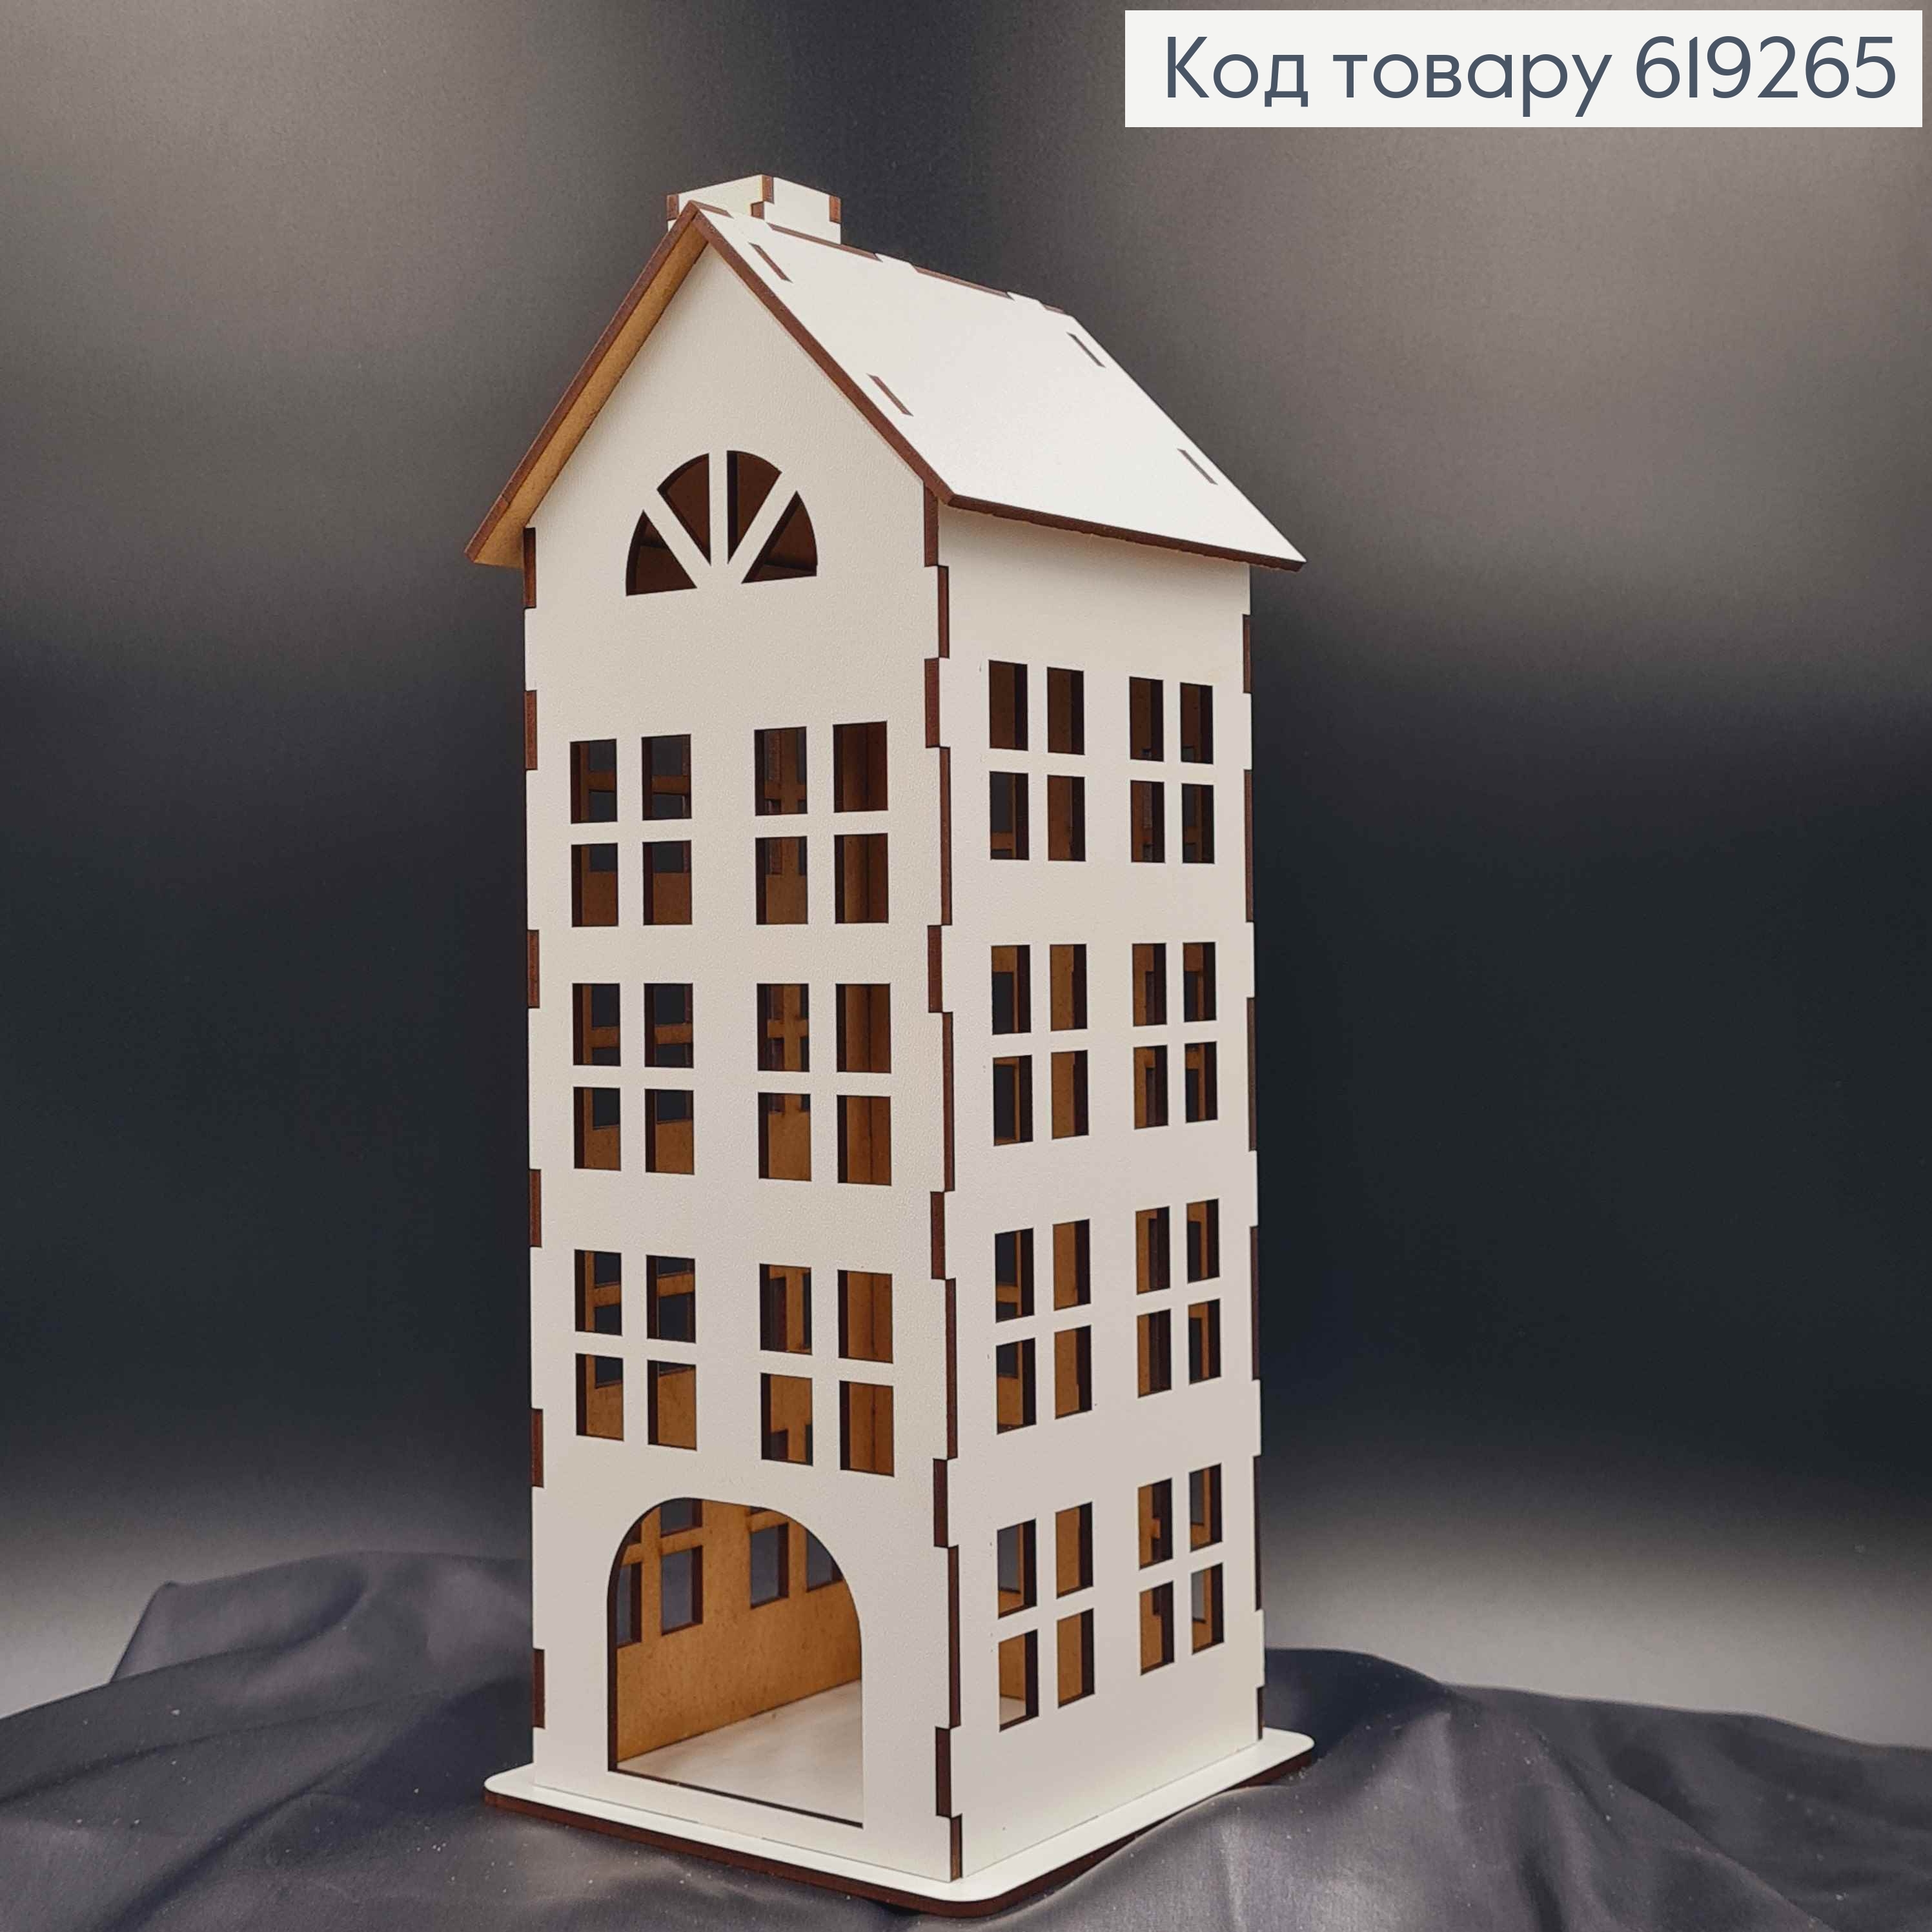 Подсвечник, деревянный белый домик, многоэтажка, классический, 30см, Украина 619265 фото 2